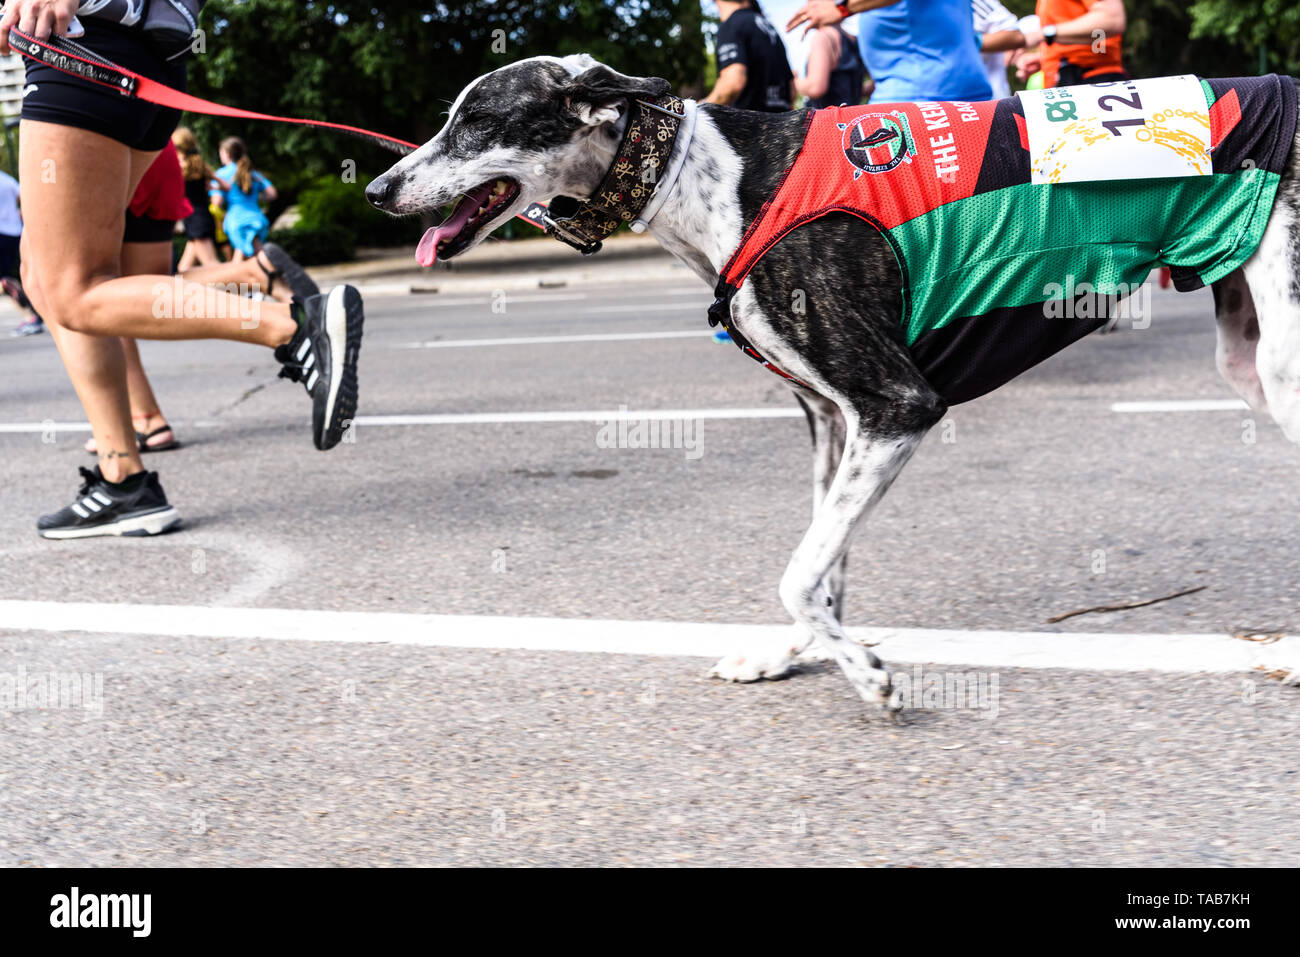 Valencia, España - 19 de mayo de 2019: perro corriendo junto a su cuidador  en una carrera pedestre de ejercicio, de los lebreles Fotografía de stock -  Alamy